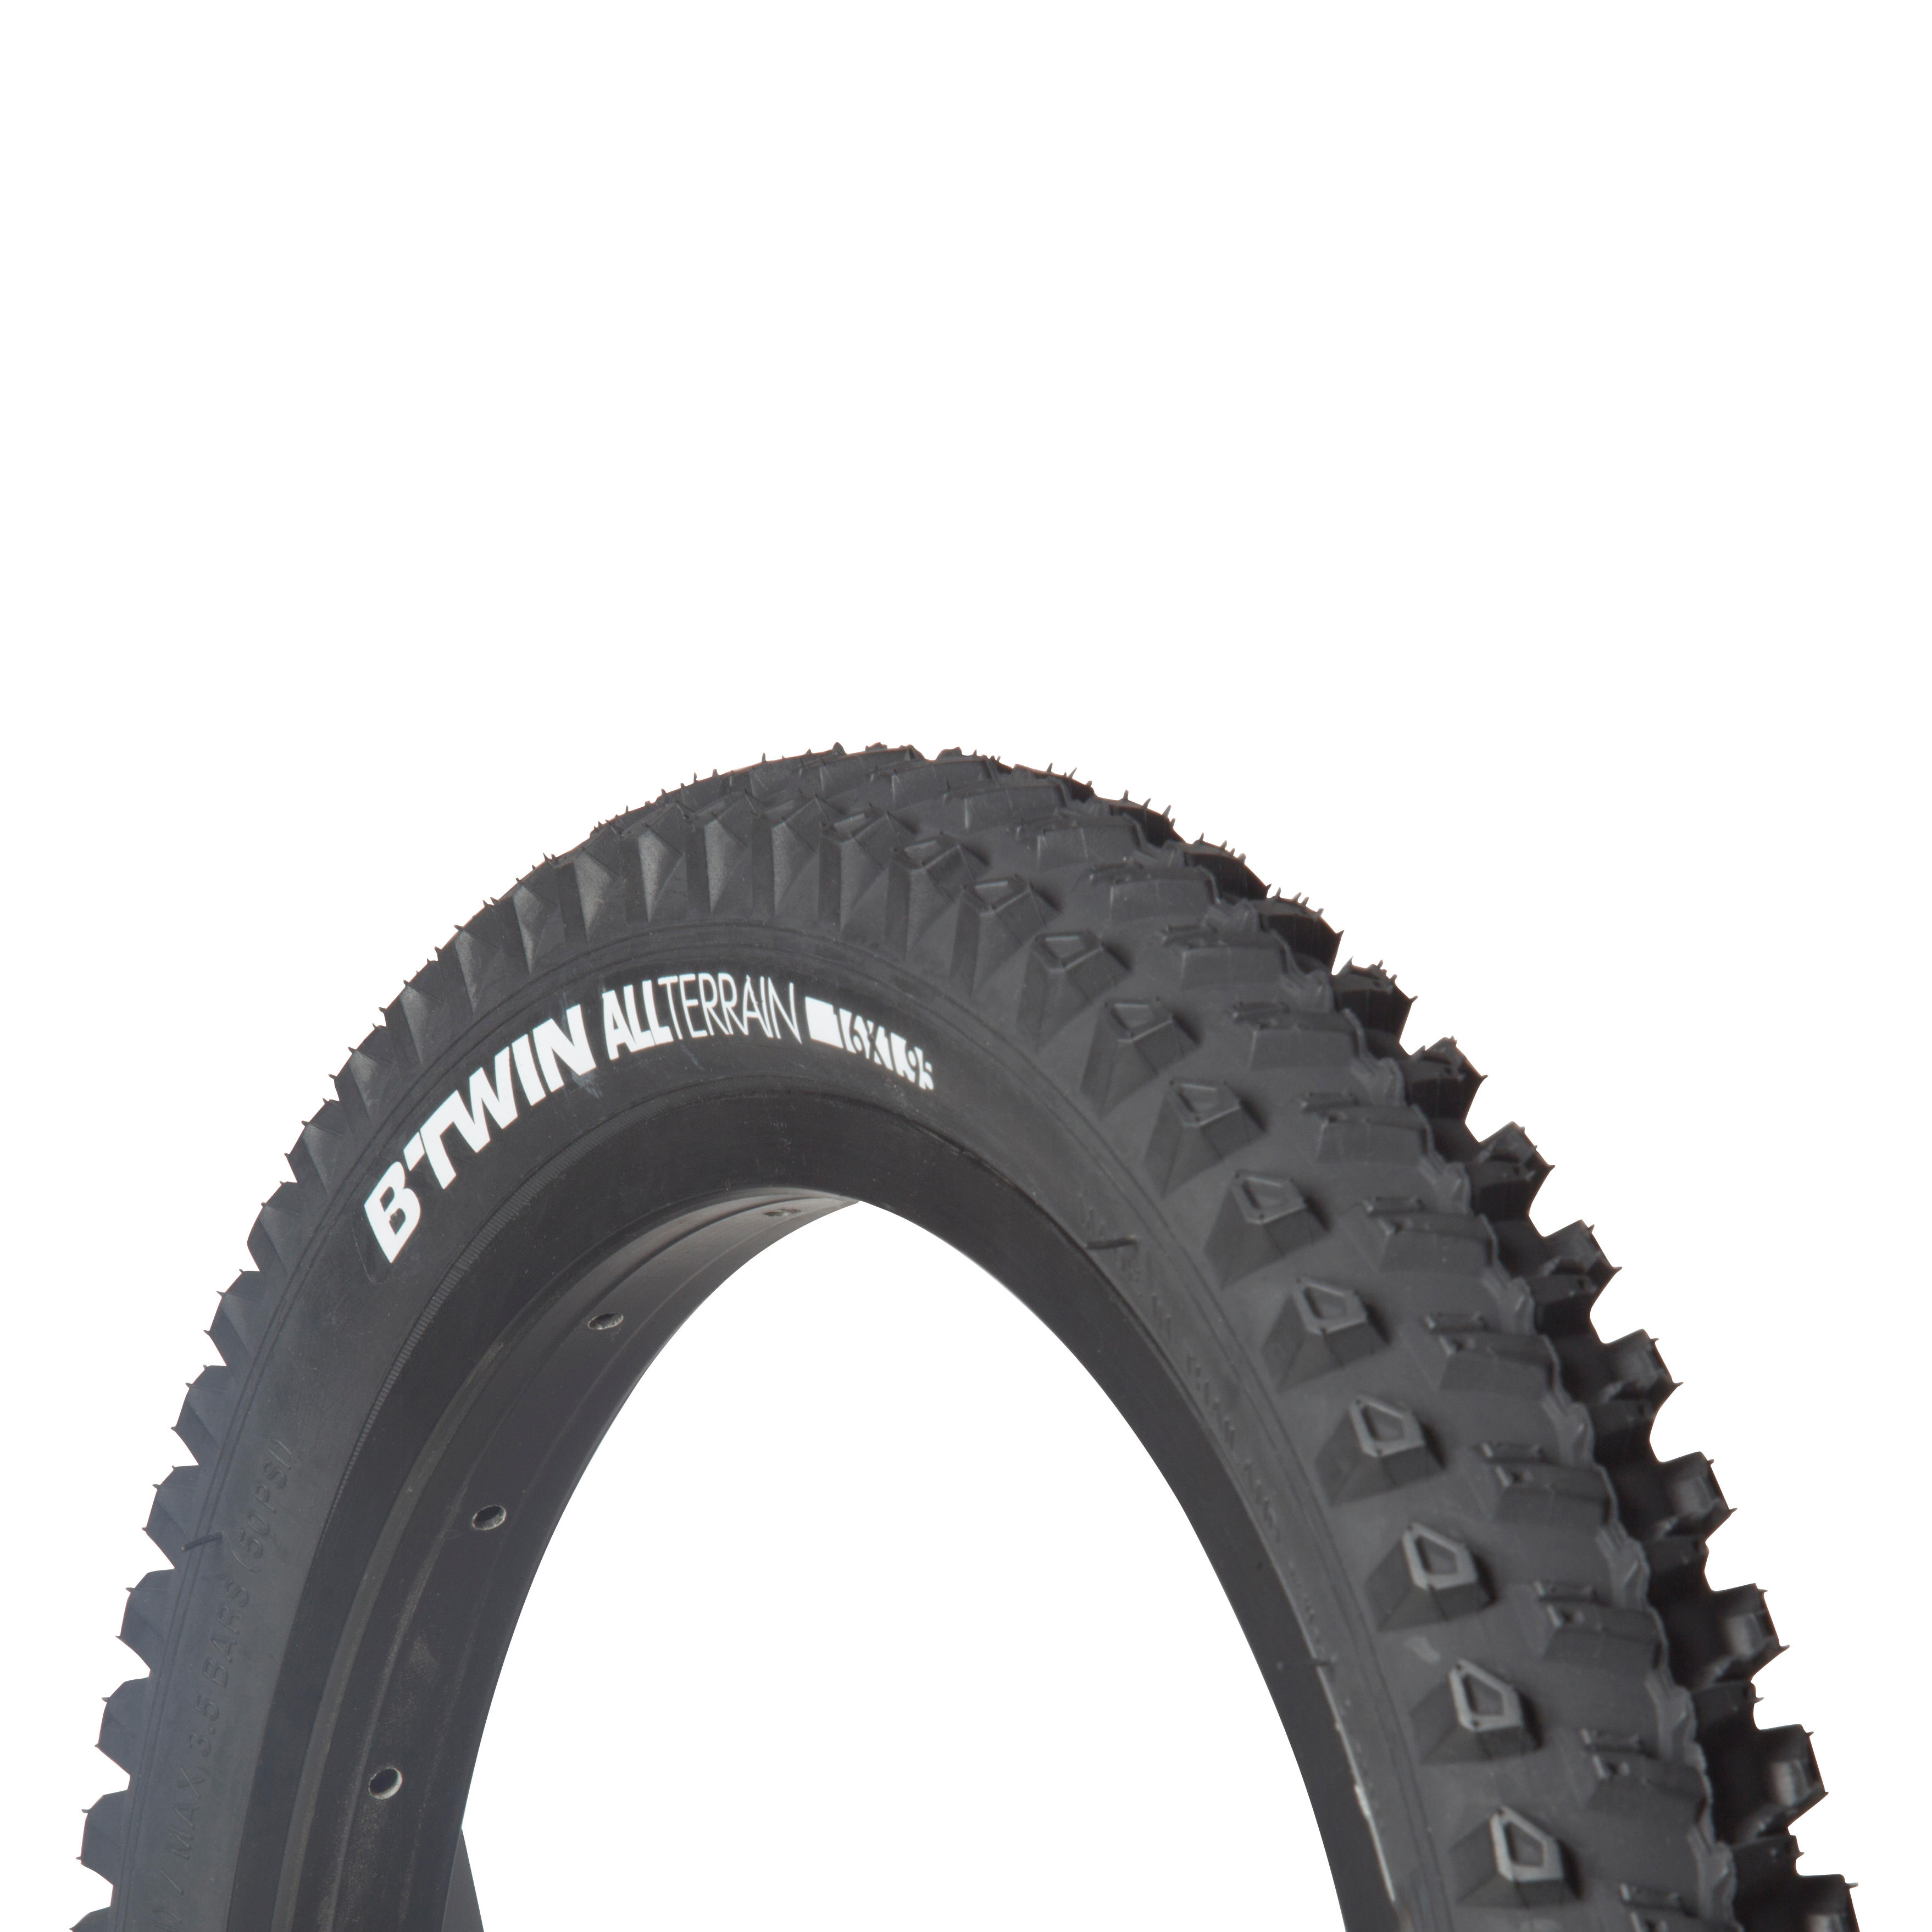 16x1 95 bike tire